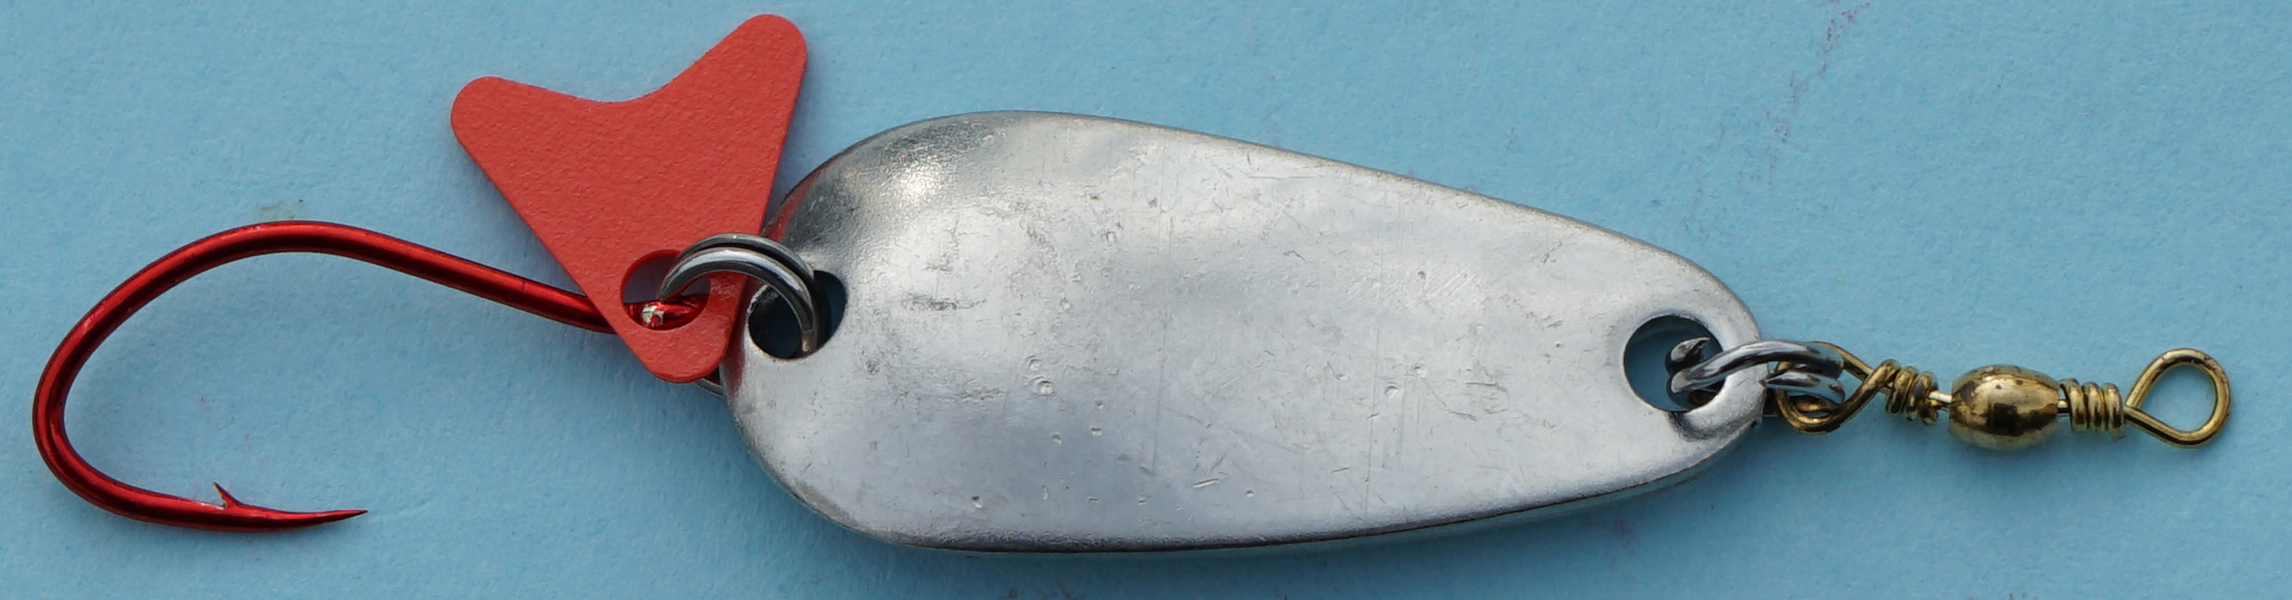 Profi-Spoon aus V2A-Edelstahl mit roten Einzelhaken / Silber-Glatt / Größe A / 5g / 35mm 